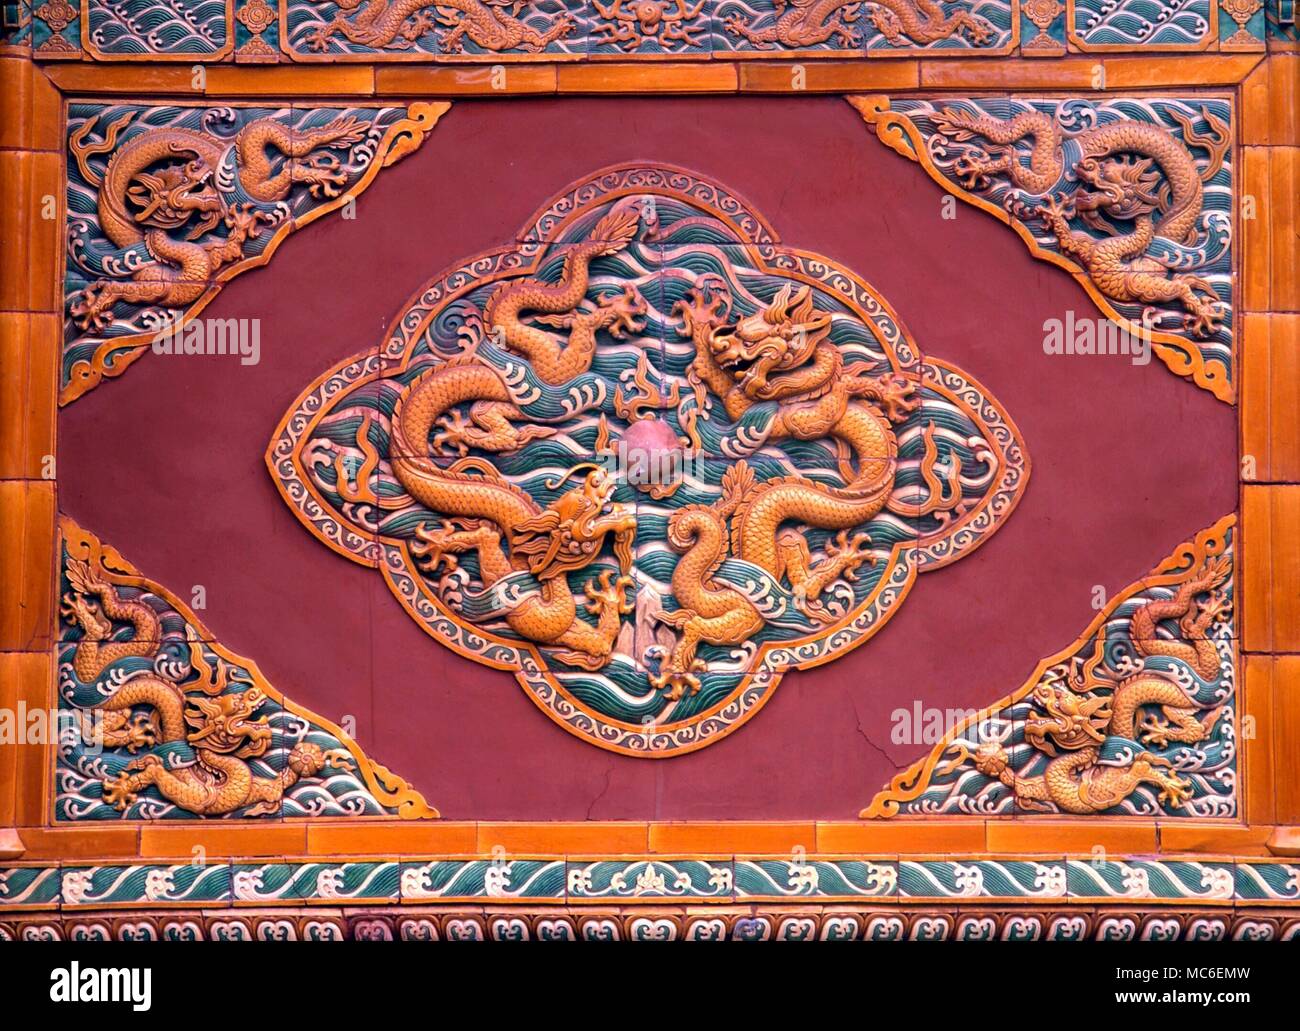 Draghi cinesi marmo bassorilievi dei combattimenti fu-dragons sulla vecchia porta alla avenue degli animali presso le Tombe dei Ming, a Shi San Ling, nei pressi di Pechino Foto Stock